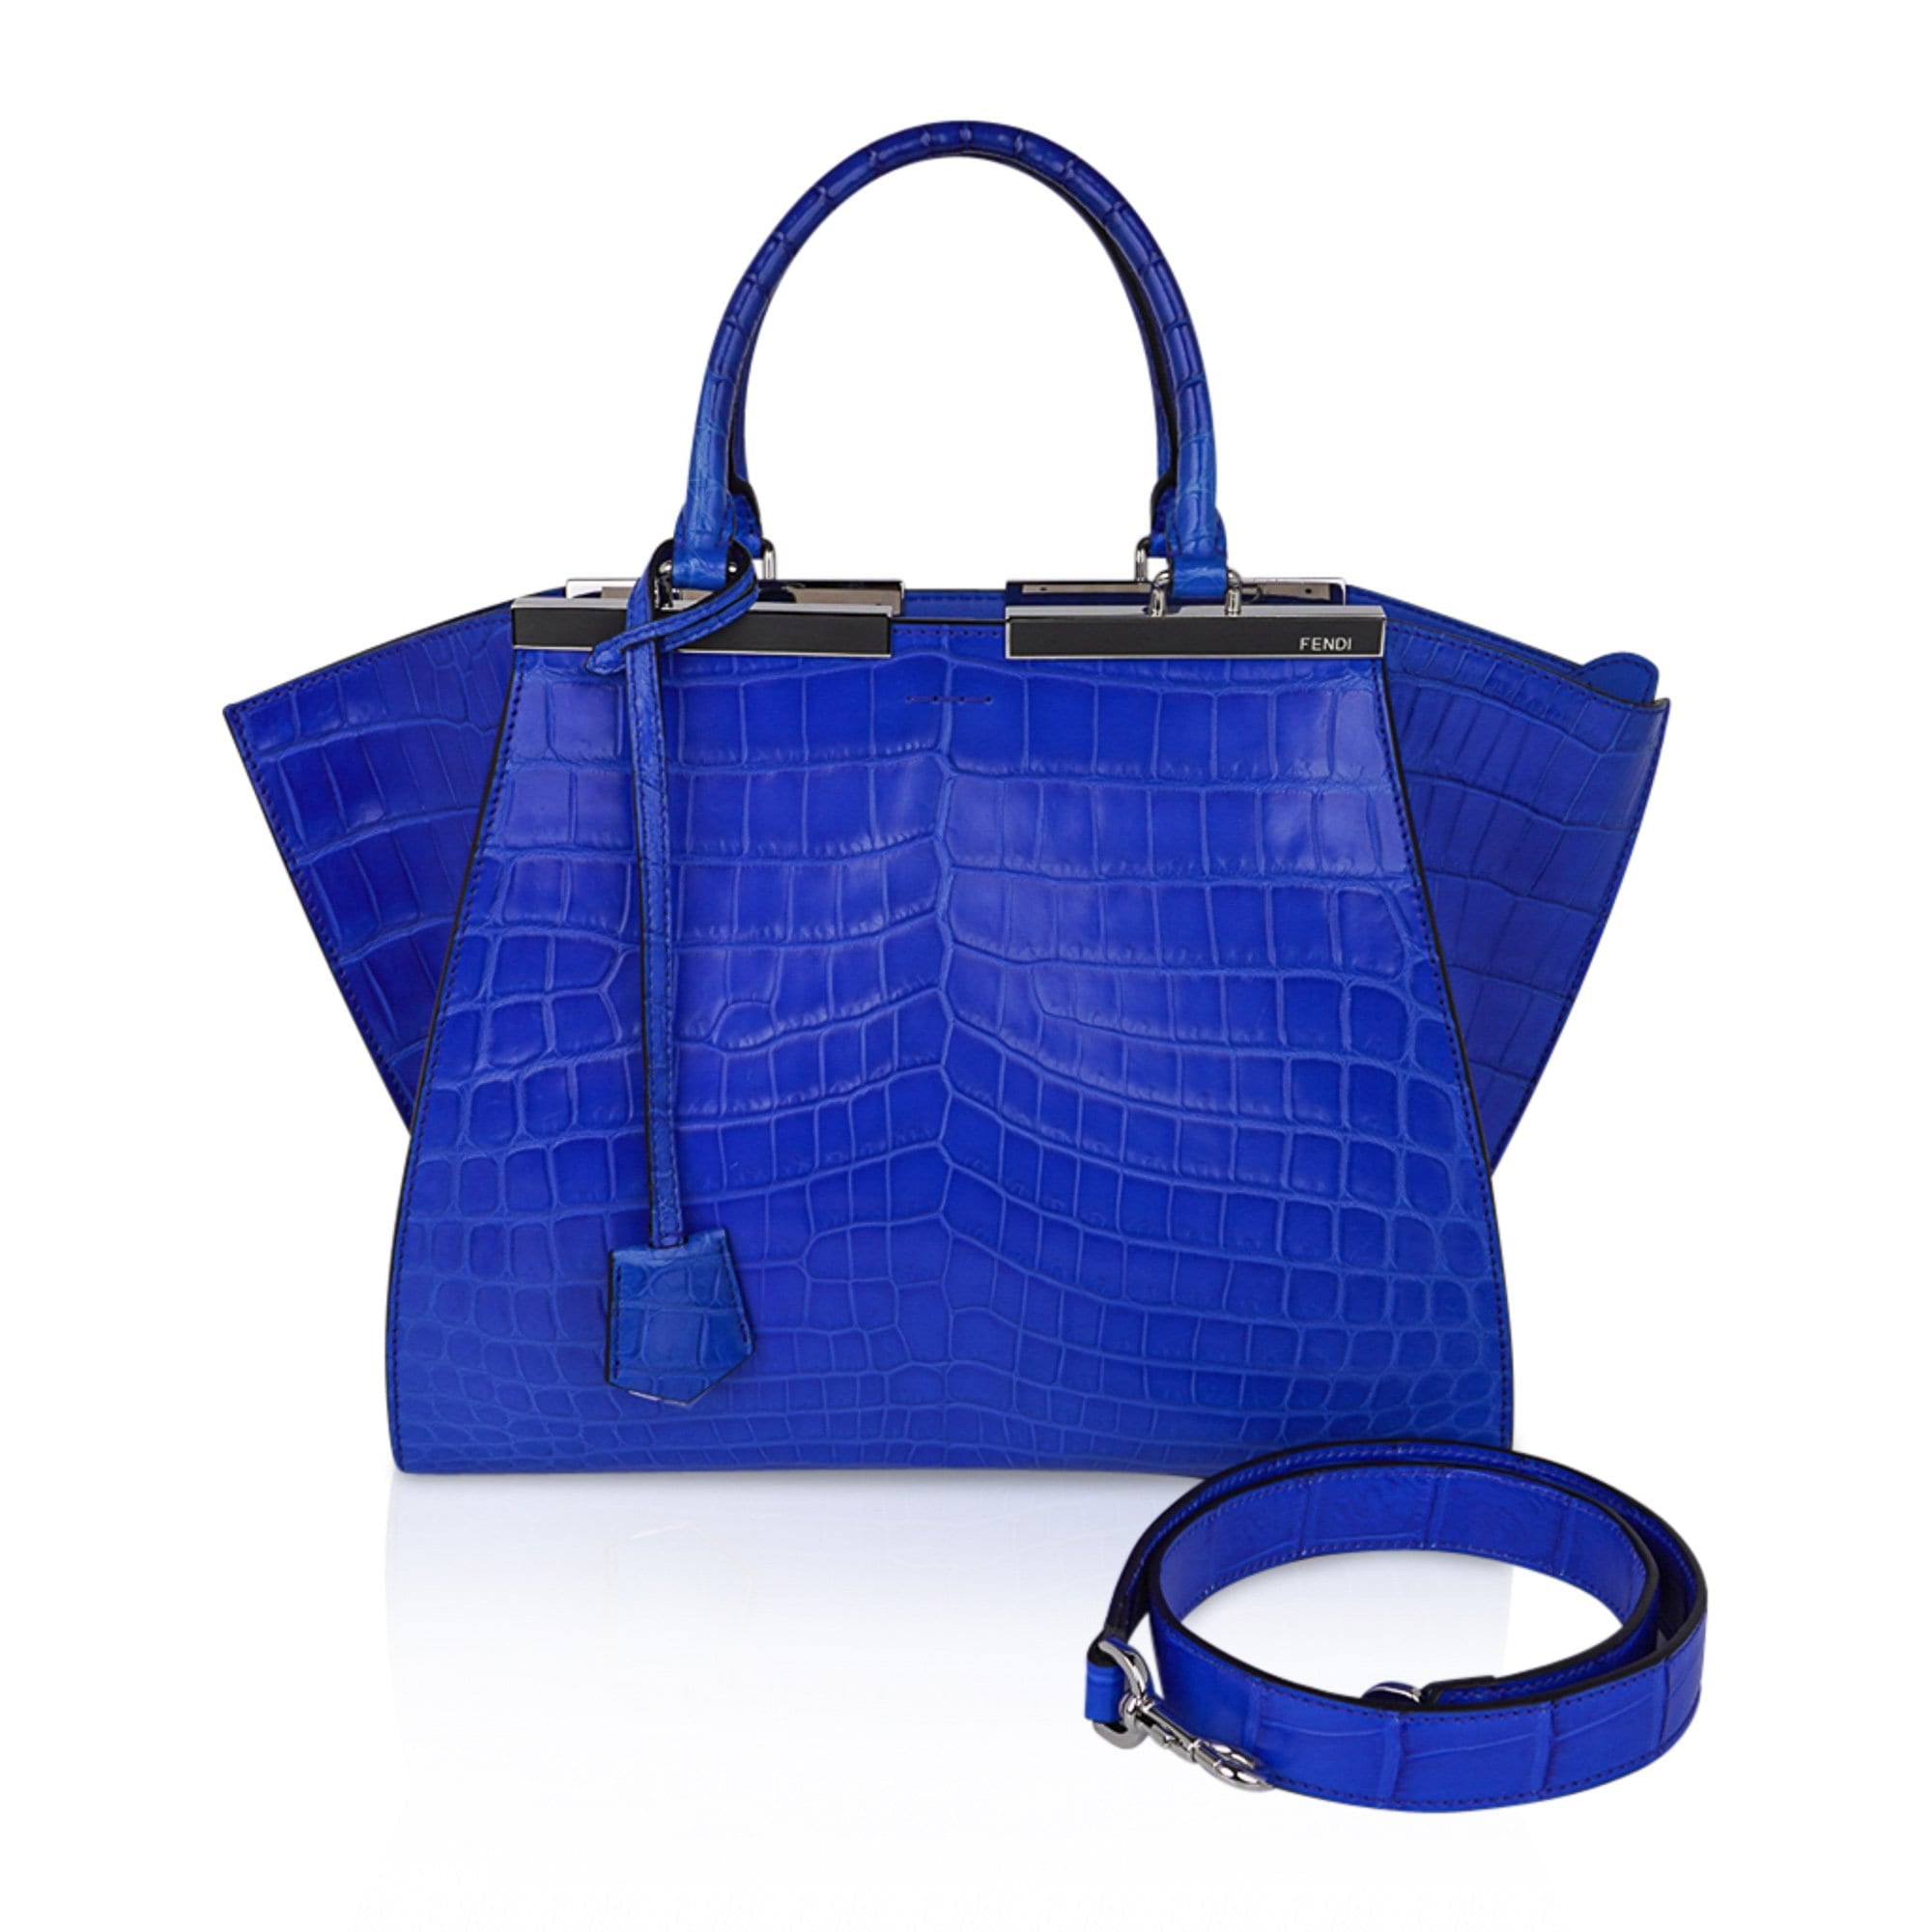 Moynat - 'Gabrielle' bag in blue crocodile. | 핸드백